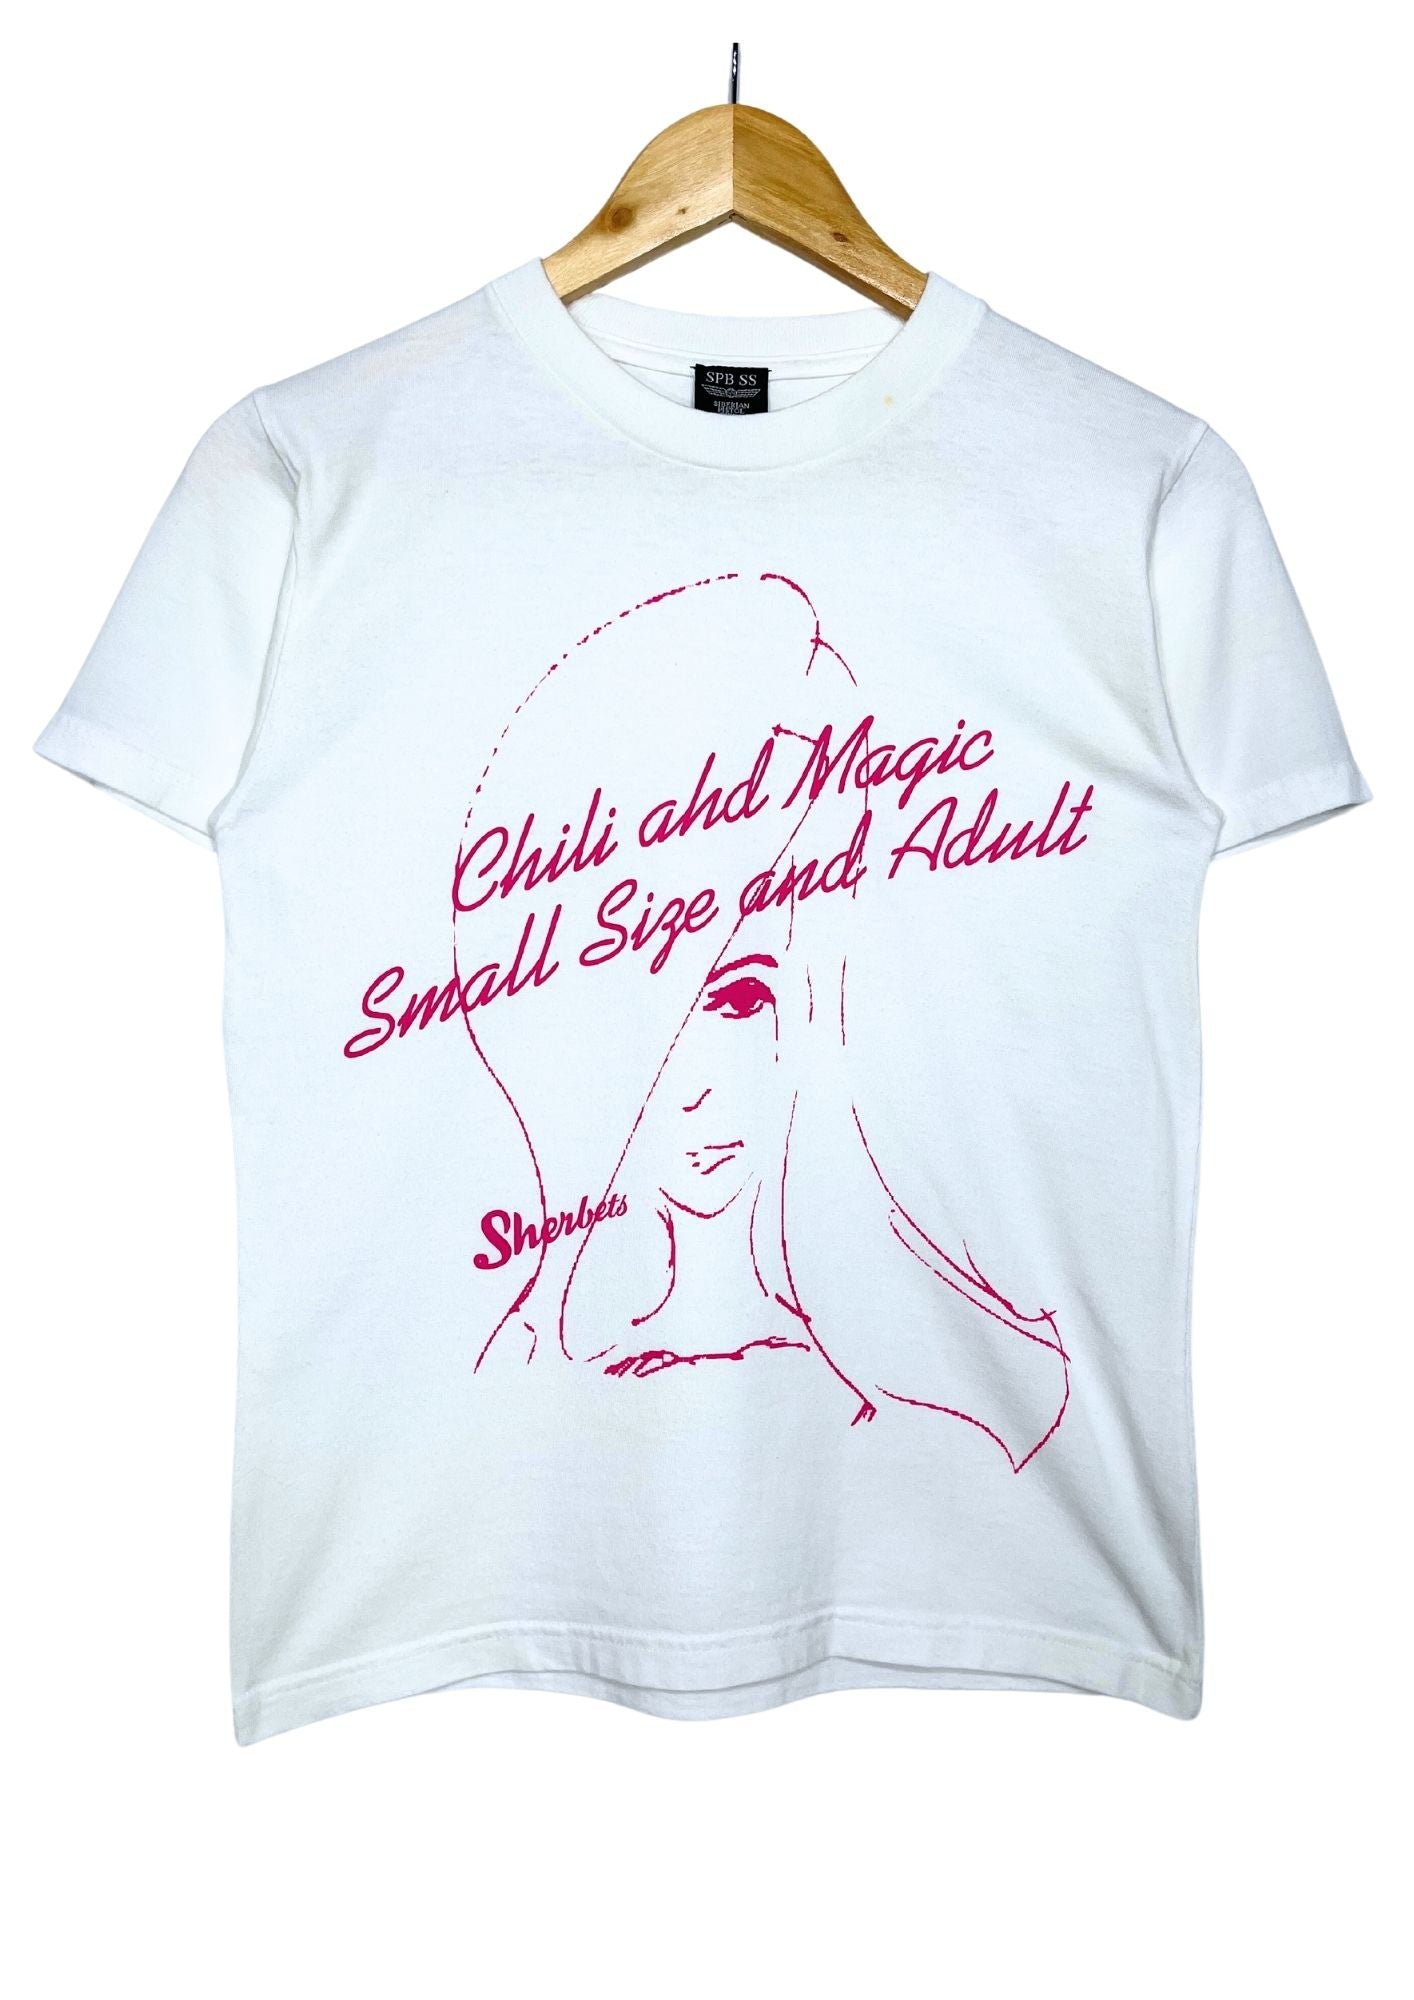 00s SHERBETS 'Chili and Magic' Japanese Band T-shirt